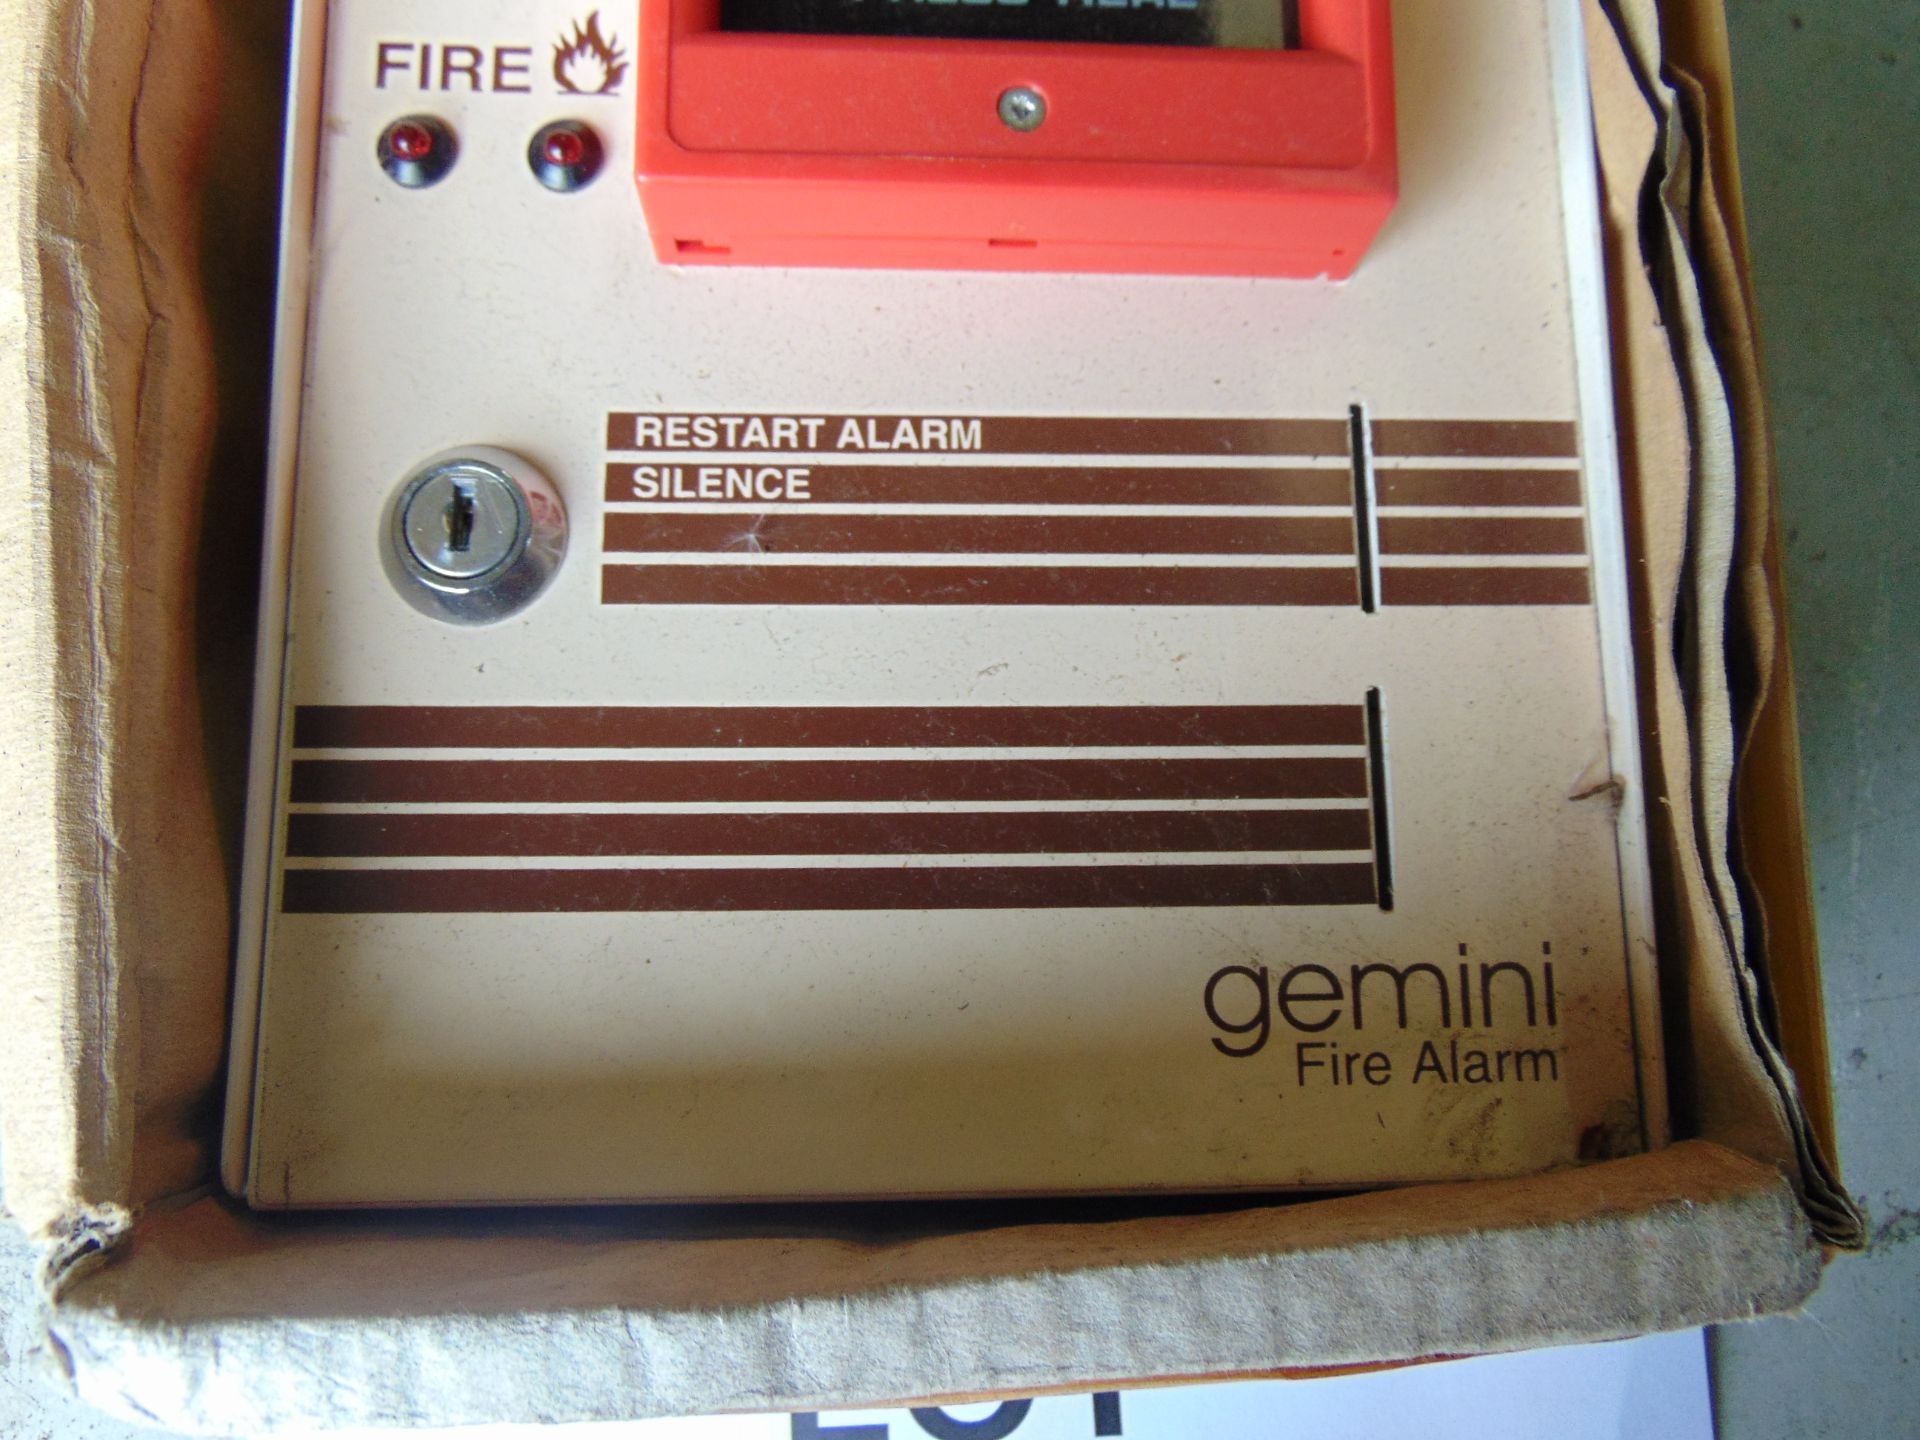 Gemini Fire Alarm - Image 3 of 3